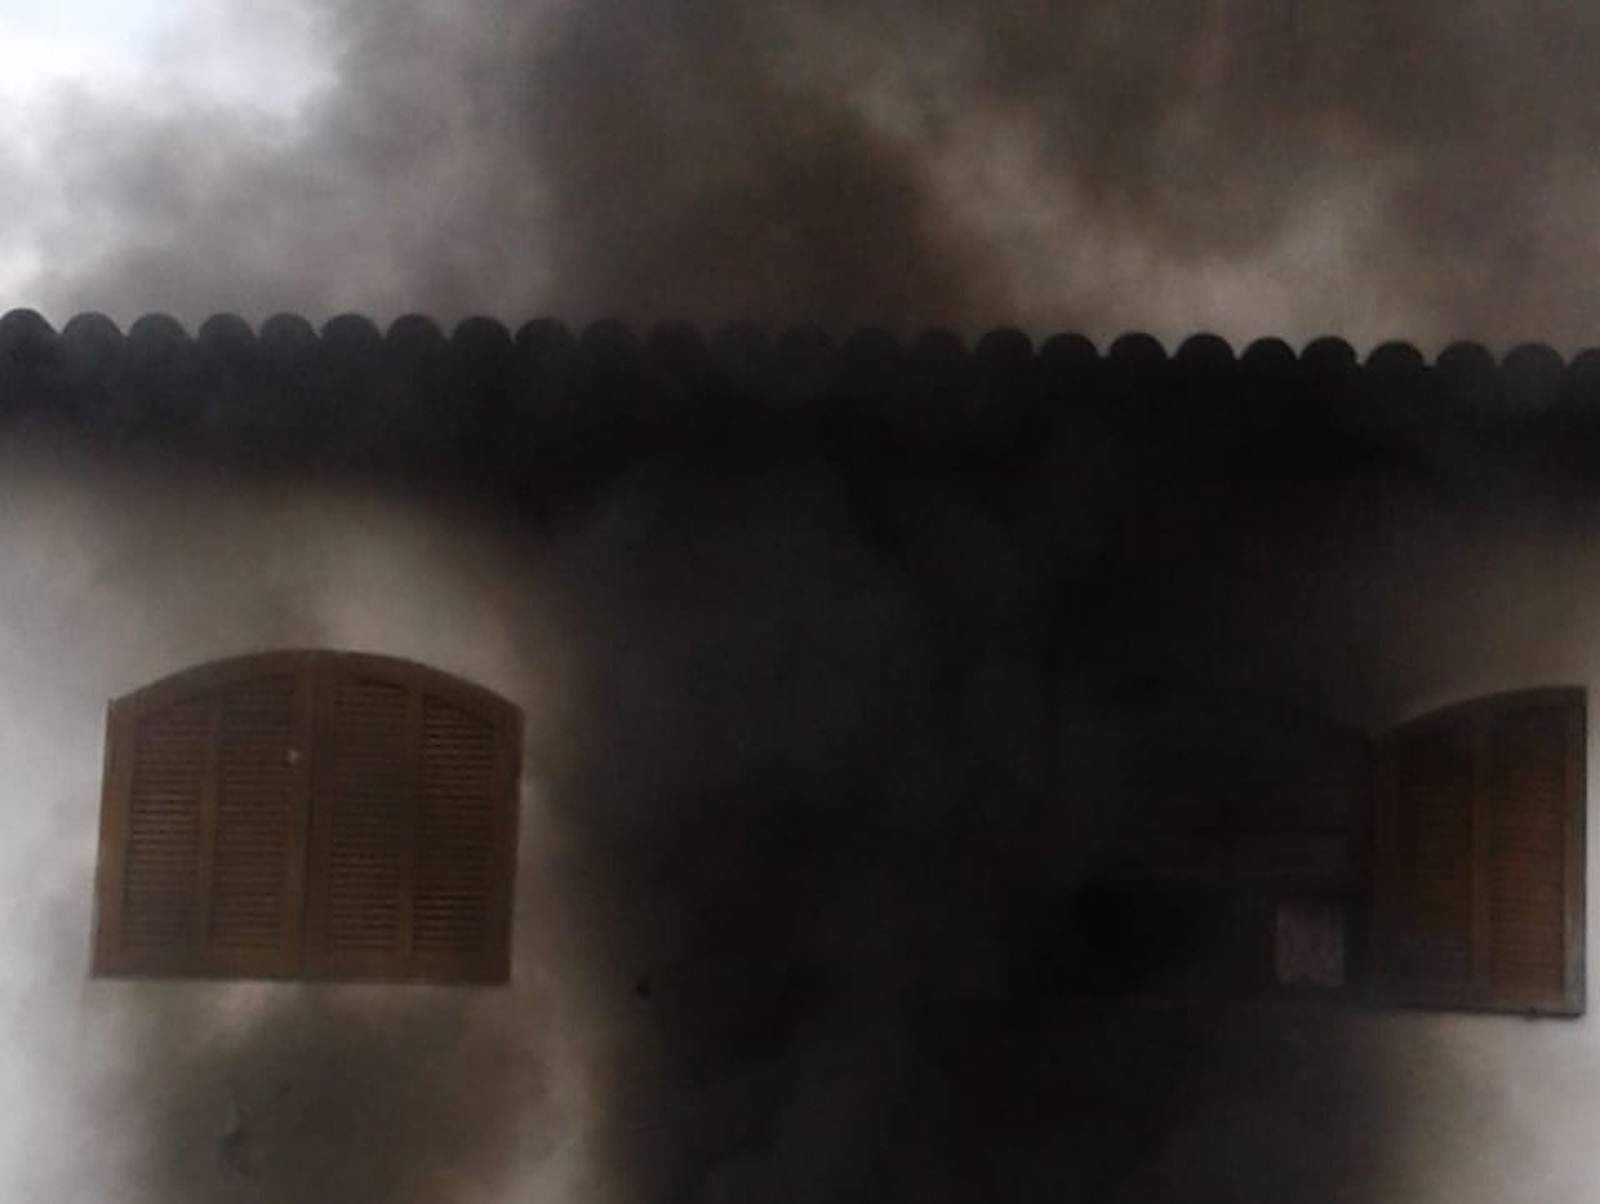 Crianças morrem durante incêndio em residência de dois andares em Paraty